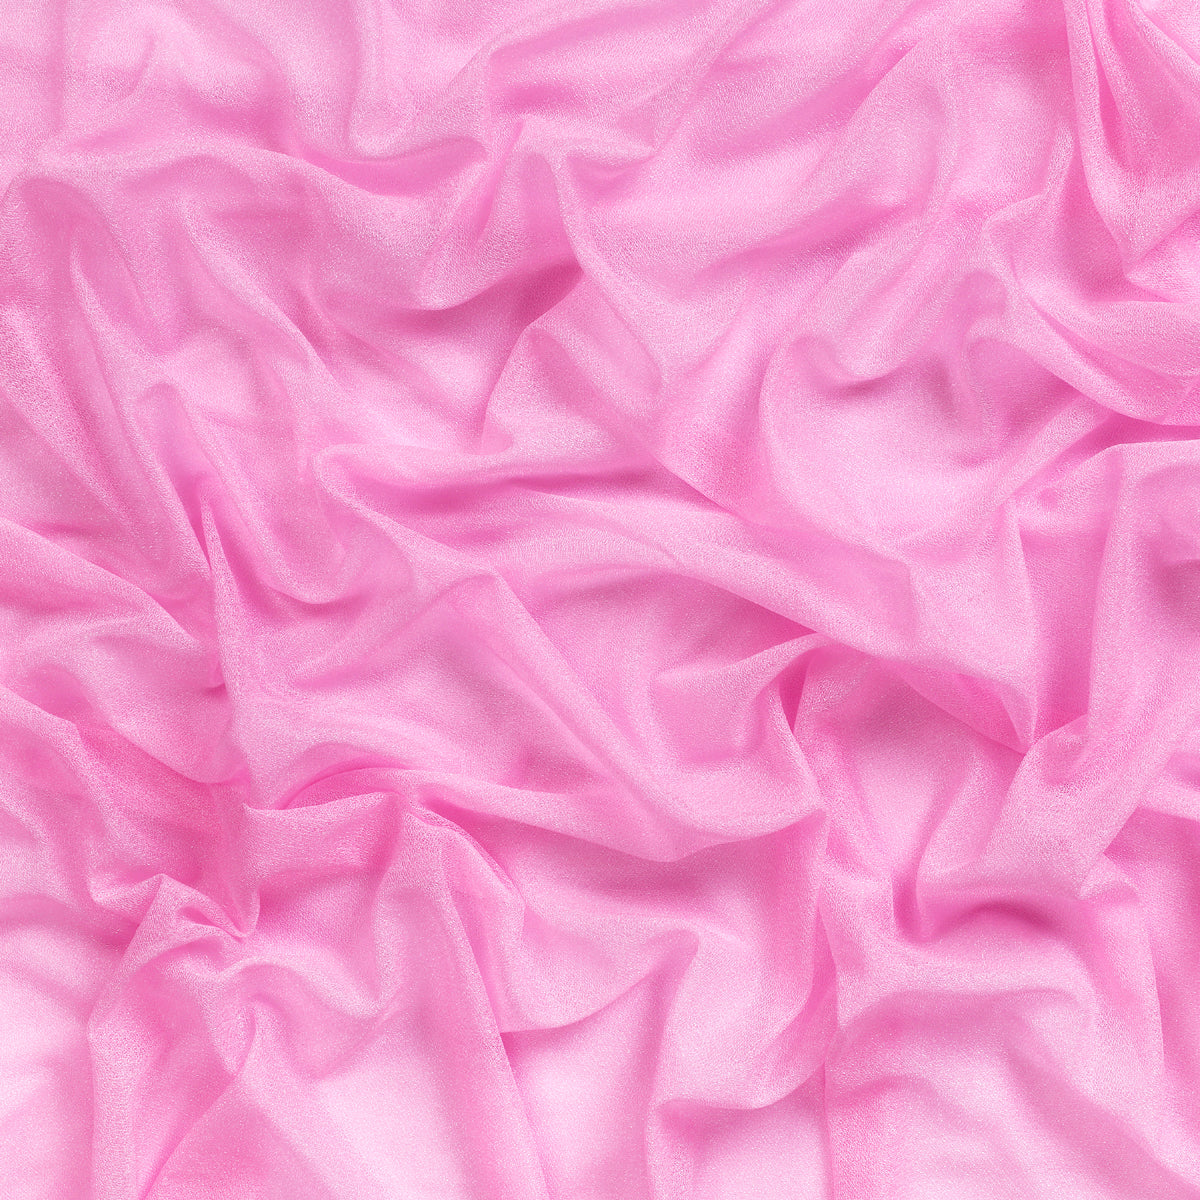 Bubblegum Pink,5a03dbd6-4c1f-4908-bee9-840067b0718e